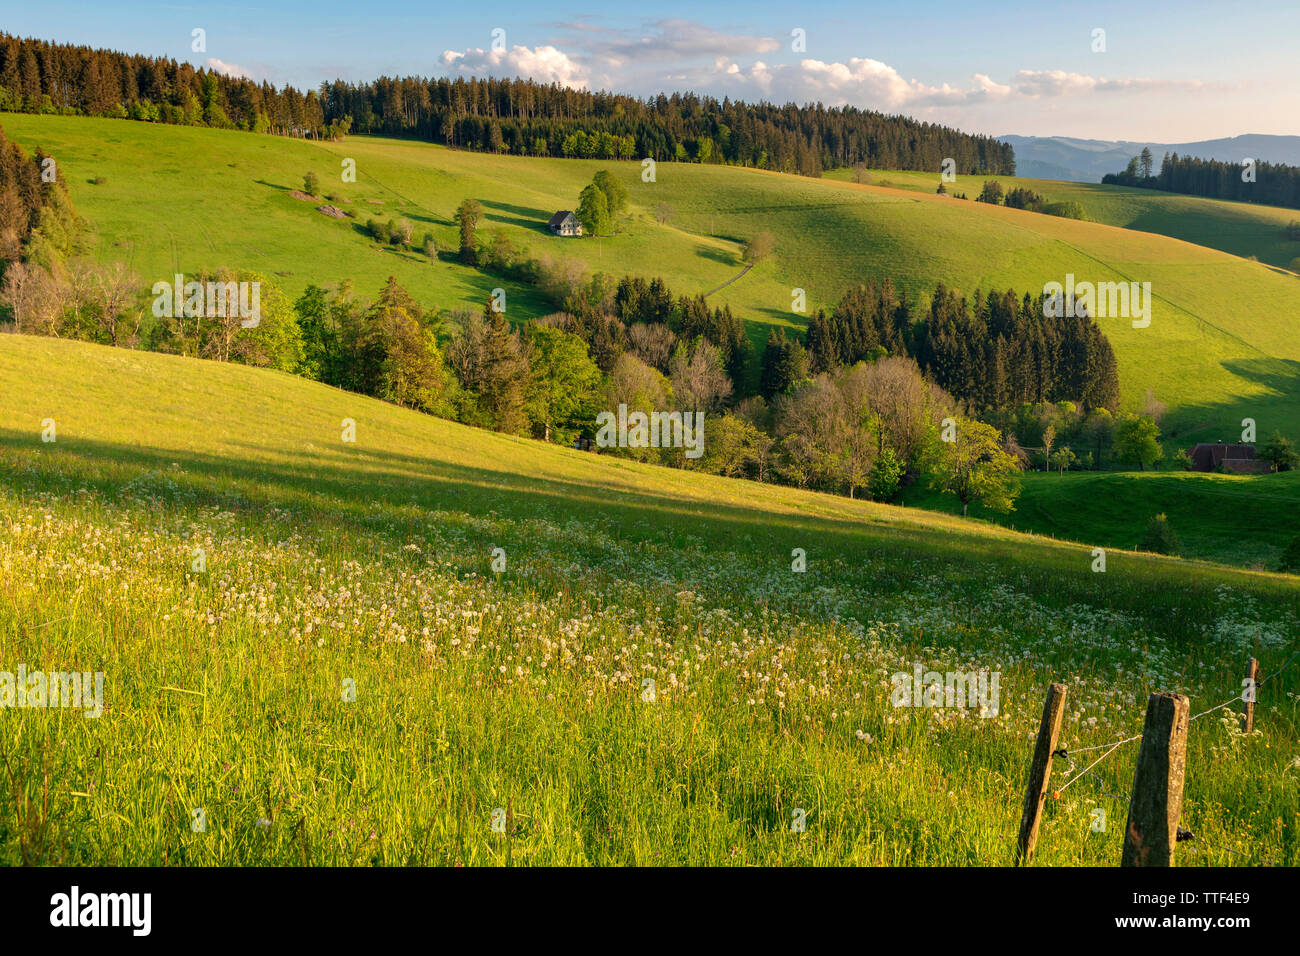 Alquería solitaria en el paisaje montañoso, St.Märgen, Selva Negra, Baden-Wurttemberg, Alemania Foto de stock